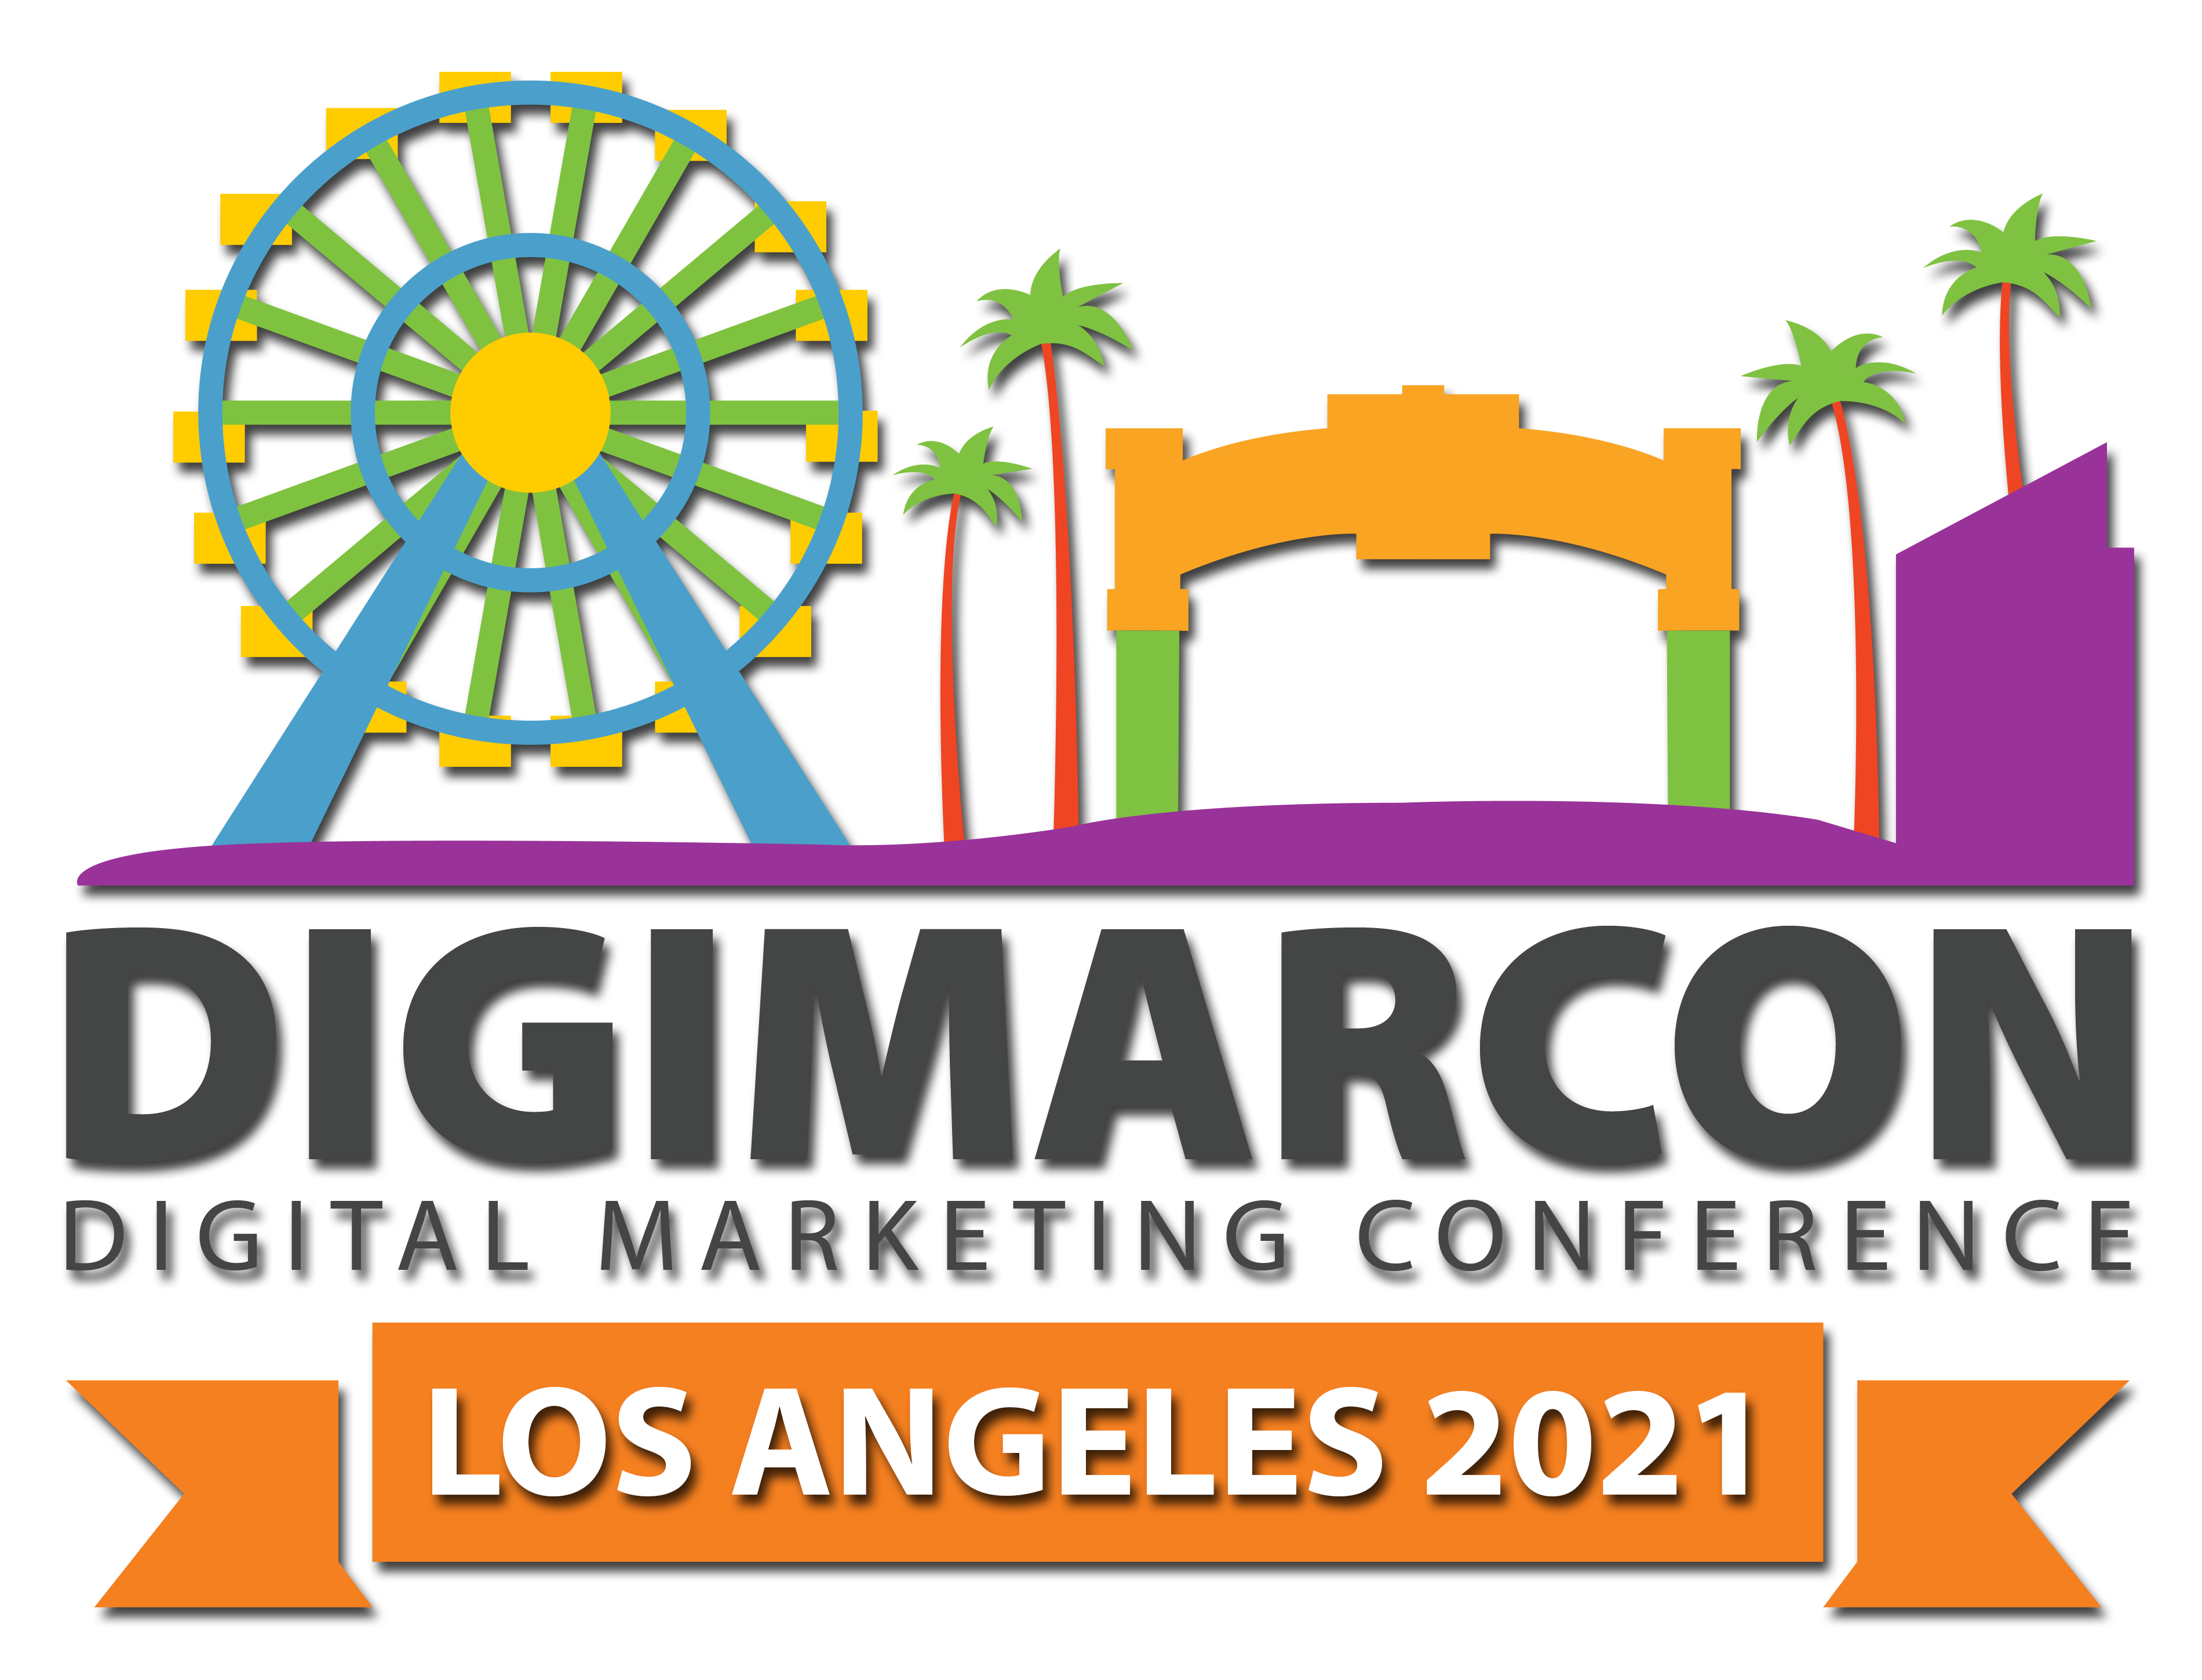 DigiMarCon Los Angeles – Digital Marketing Conferences